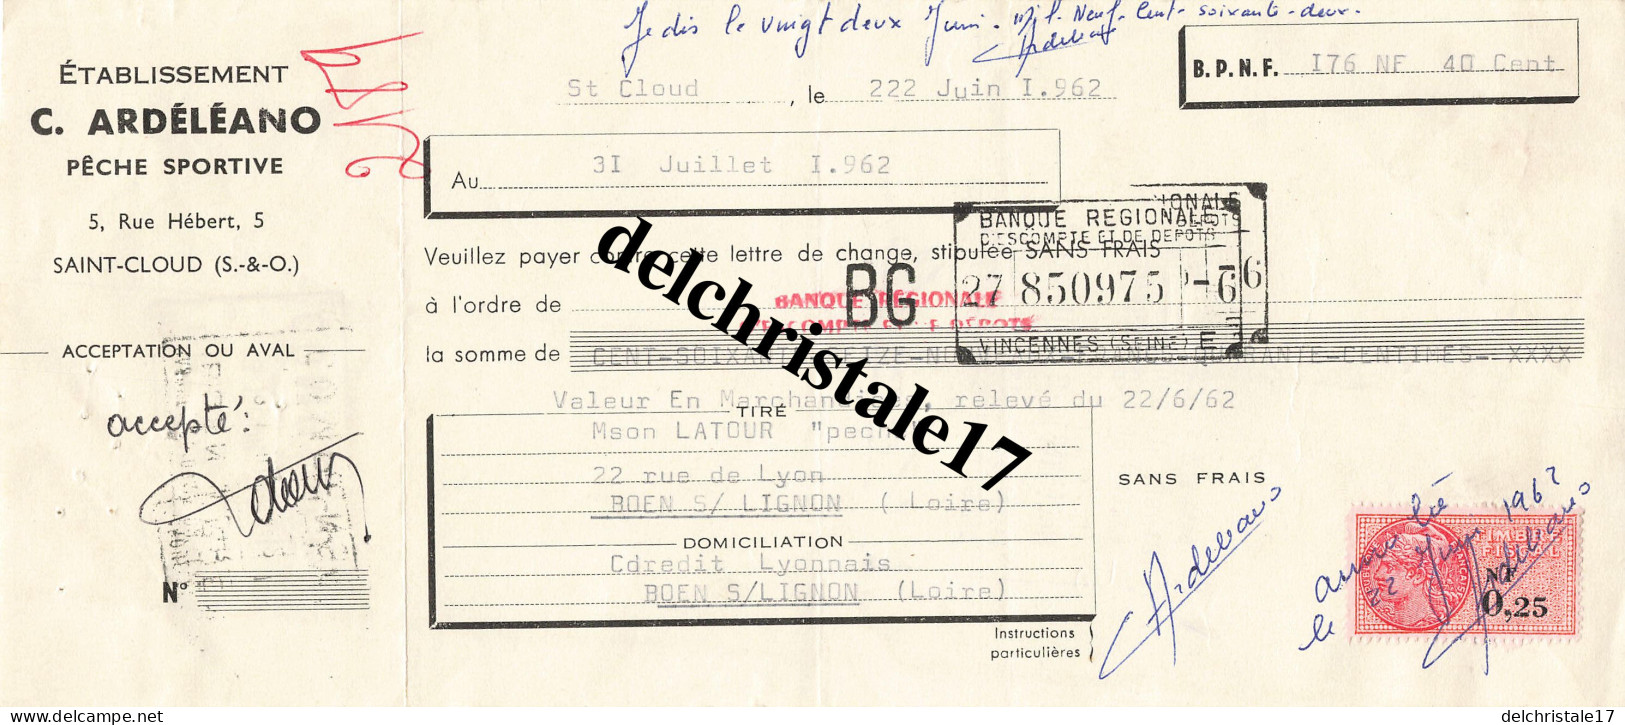 92 0042 SAINT-CLOUD SEINE 1962 Pêche Sportive Éts C. ARDÉLÉANO Rue Hébert à M. LATOUR - Fishing